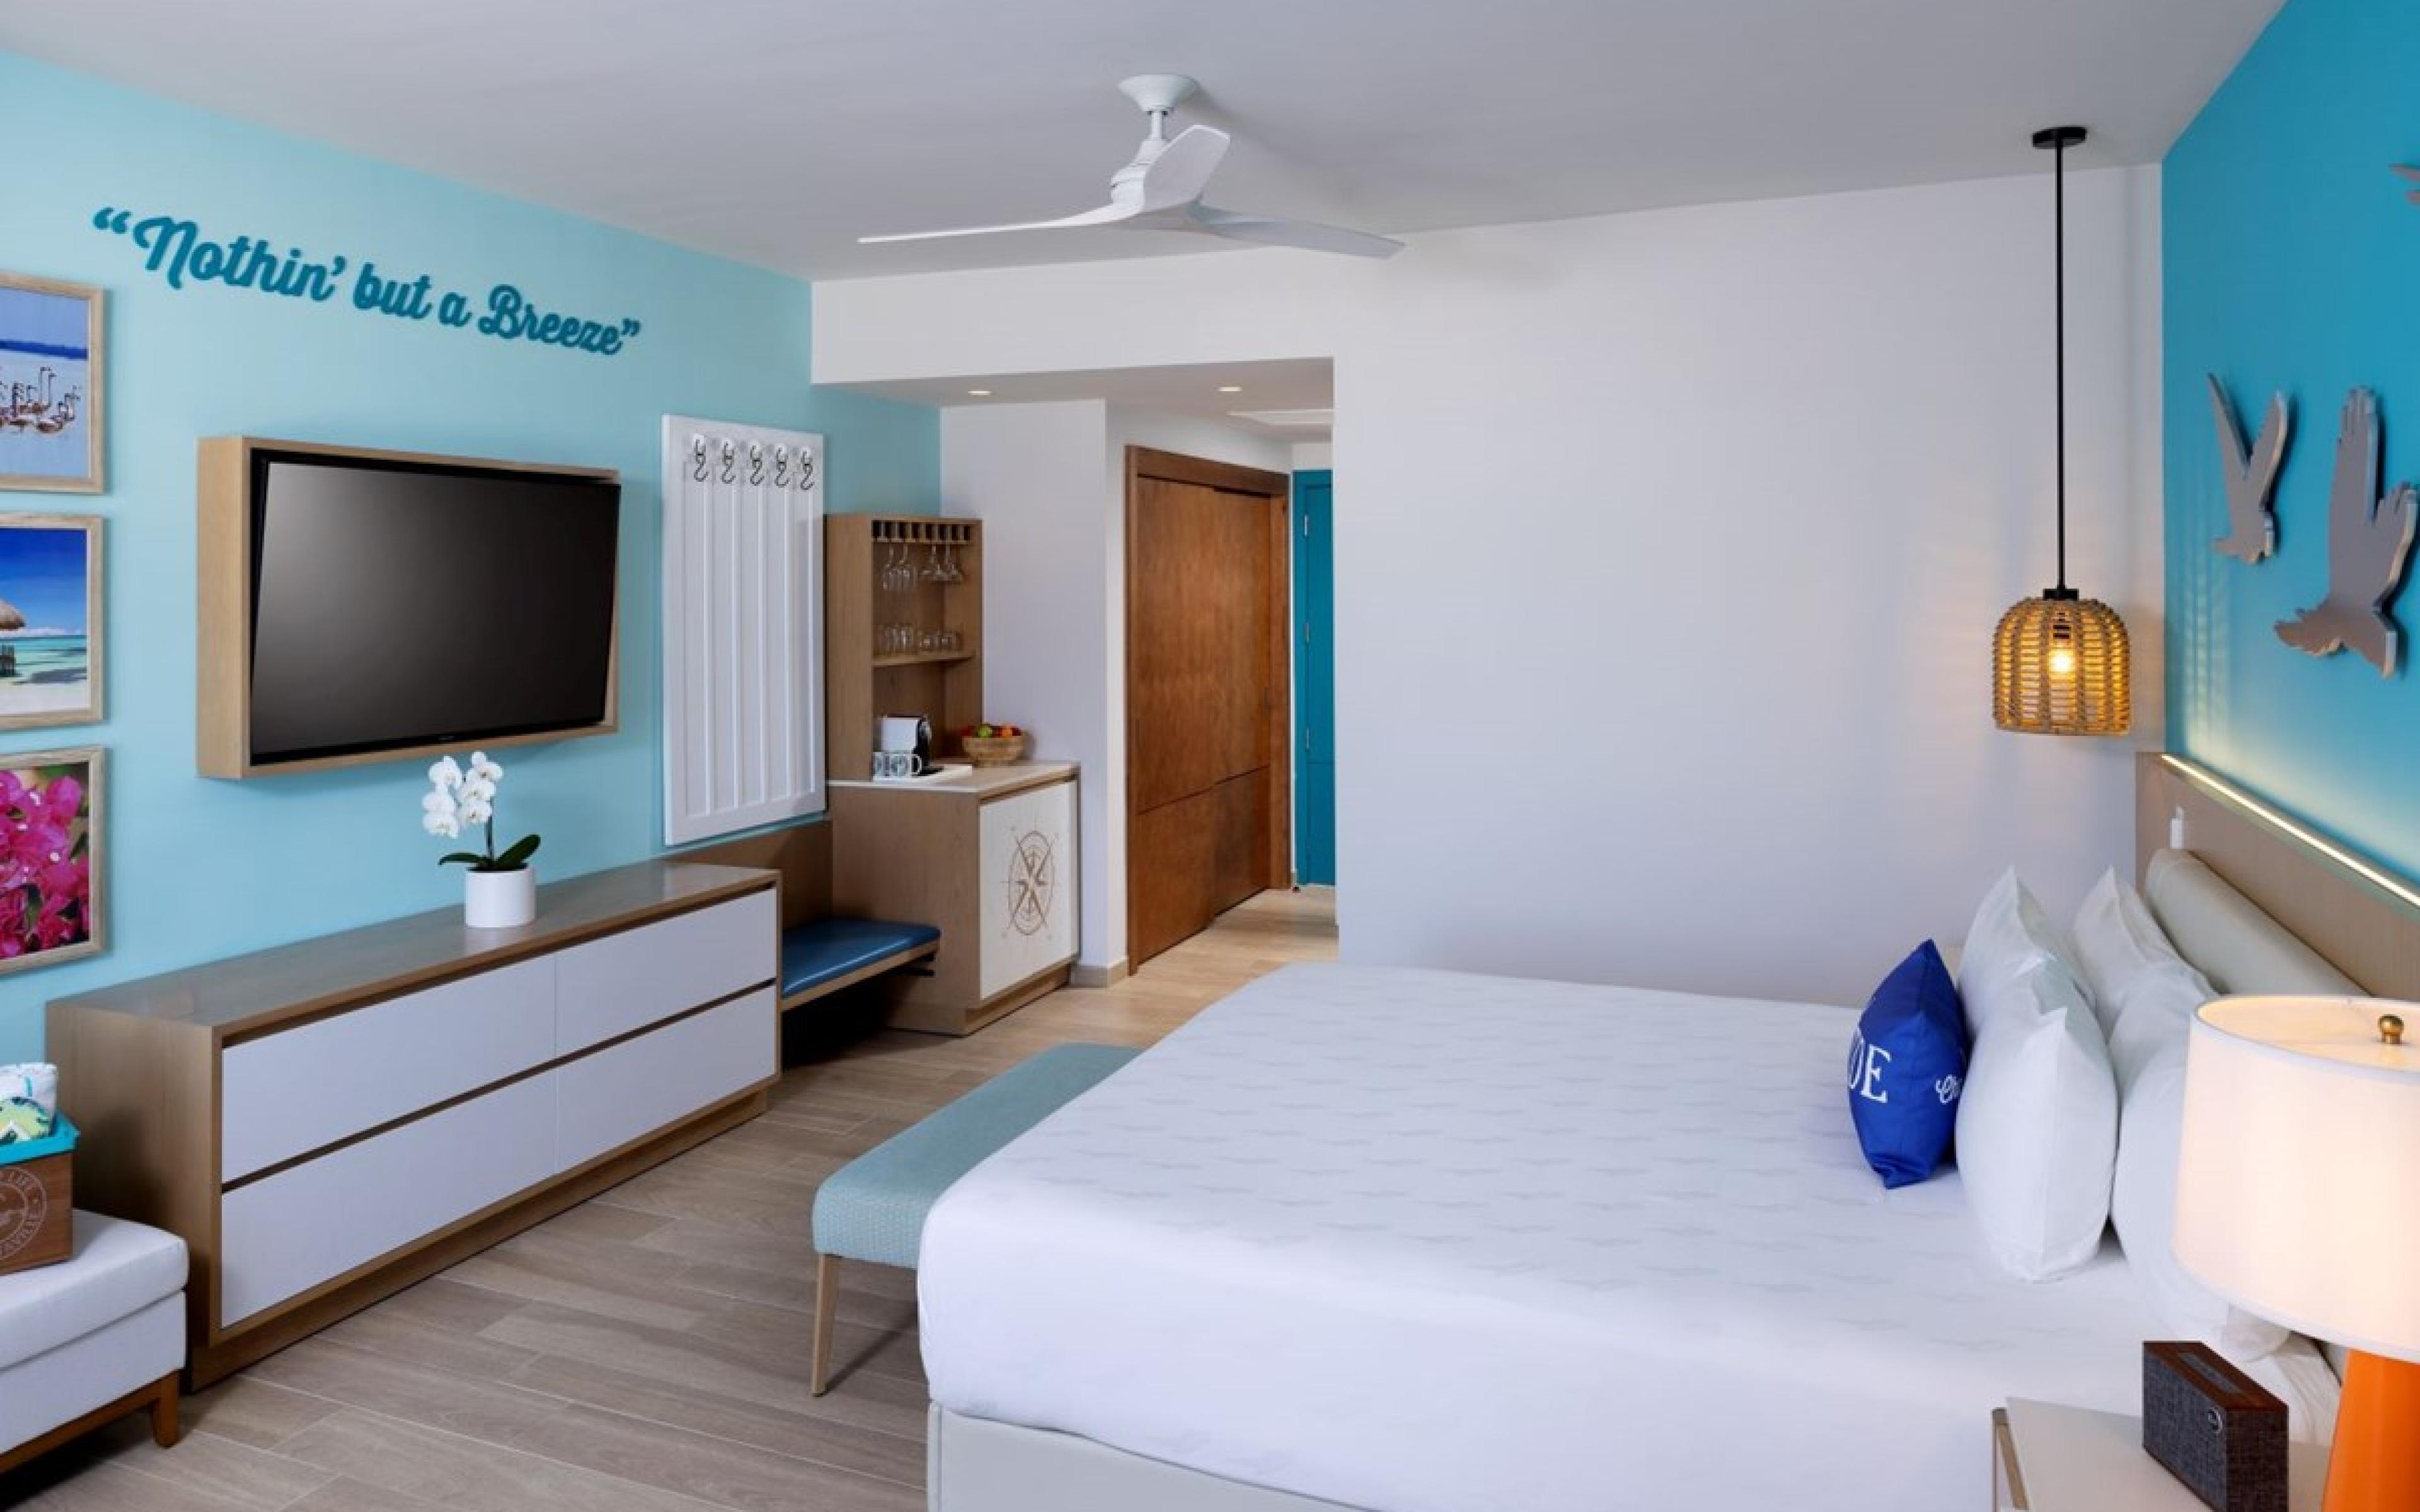 Margaritaville Beachfront Suite bedroom